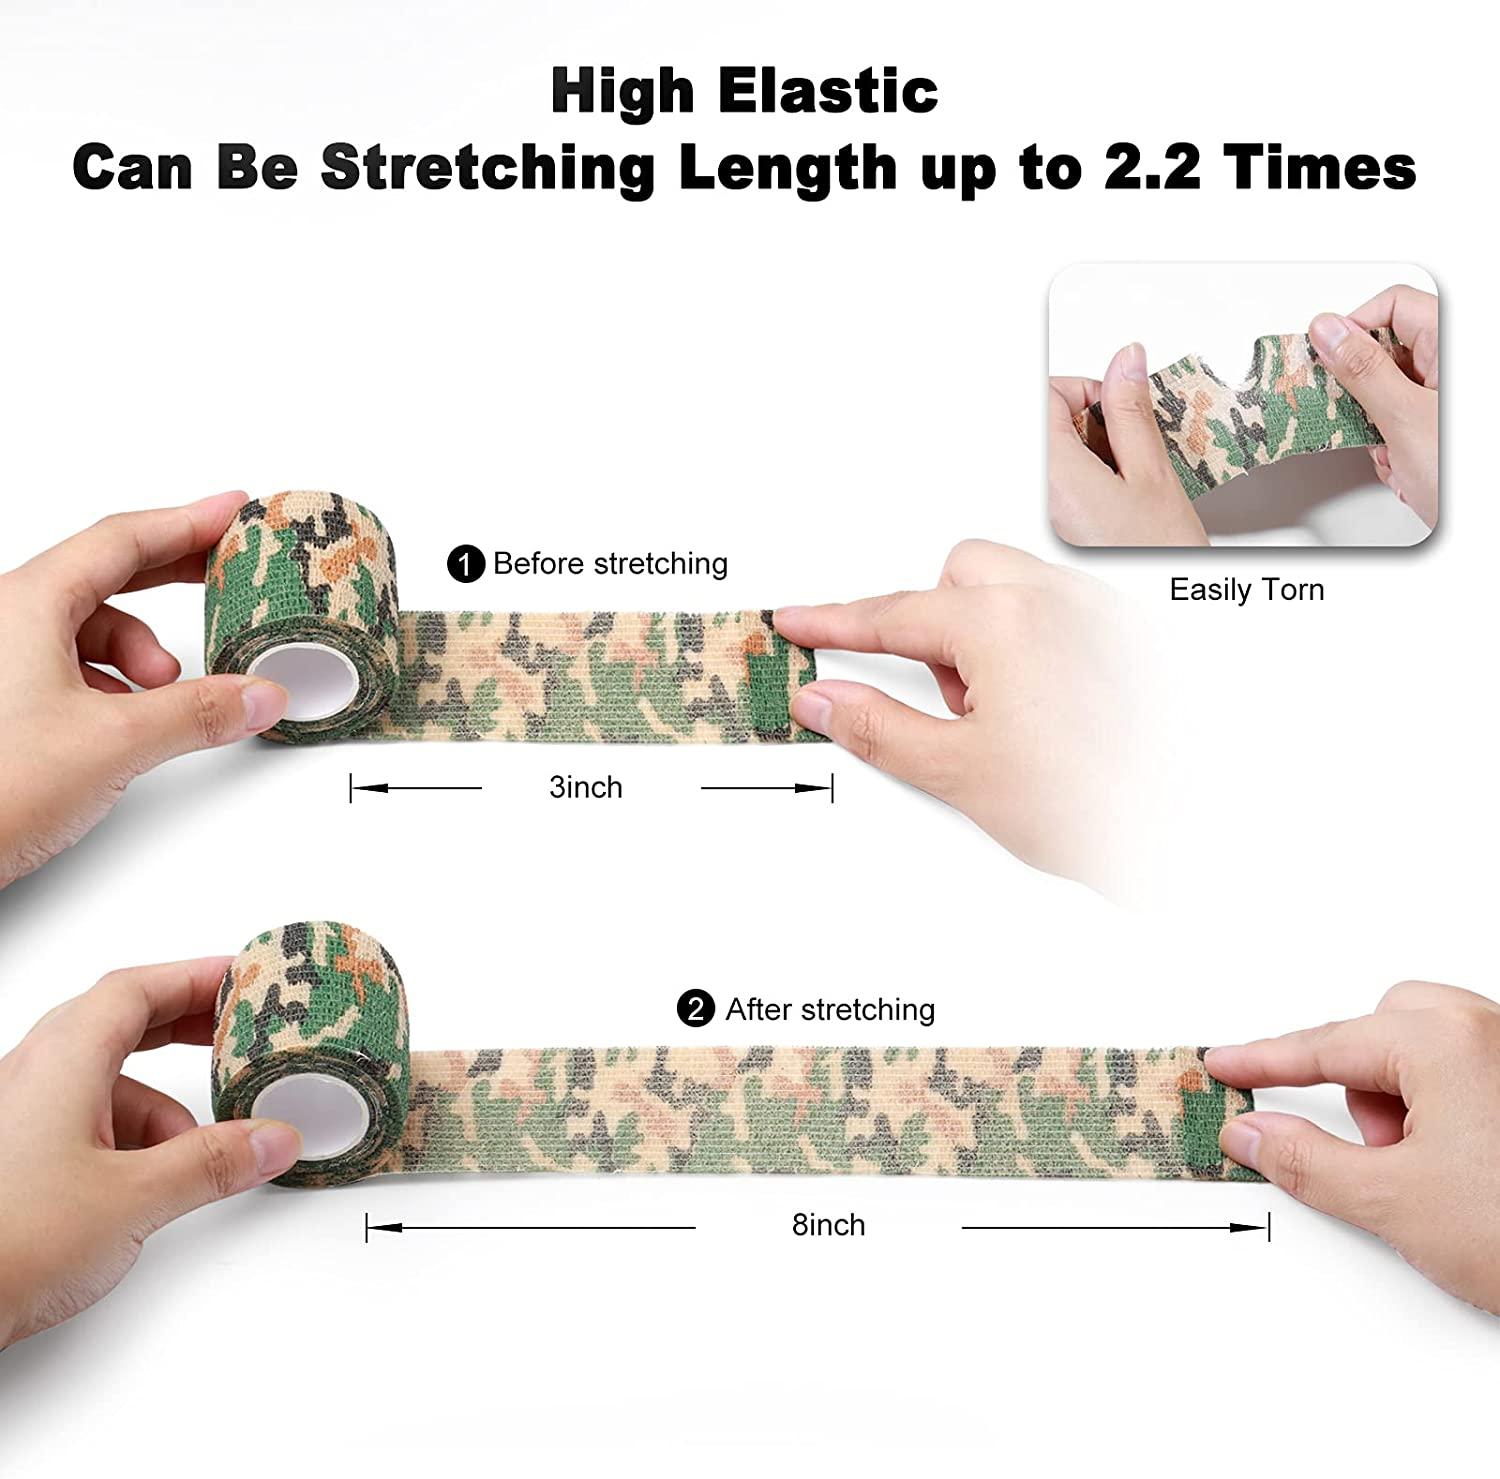  FRESINIDER 9 Rolls Self Adhesive Wrap Athletic Tape Gauze,  Breathable Elastic Cohesive Bandage for Sports Injury & Pet (7 Pcs 2x 5  Yards + 2 Pcs 1 X 5 Yards) (Pink) : Health & Household